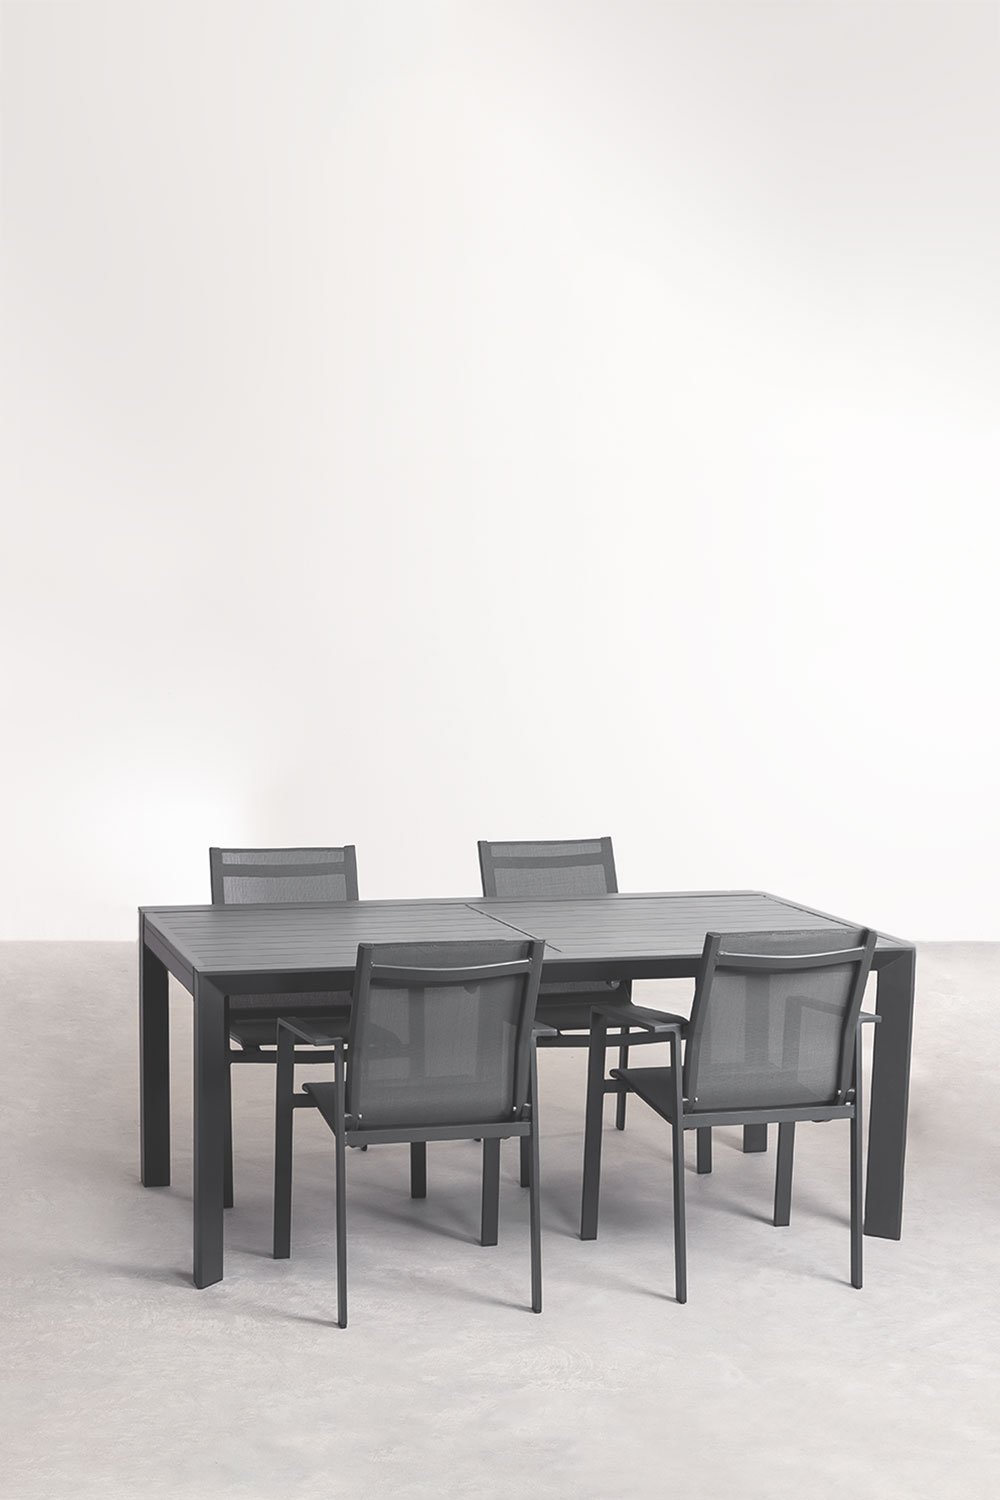  Set aus rechteckigem ausziehbarem Aluminiumtisch (180–240 x 100 cm) Starmi und 4 Eika-Gartenstühlen, Galeriebild 1